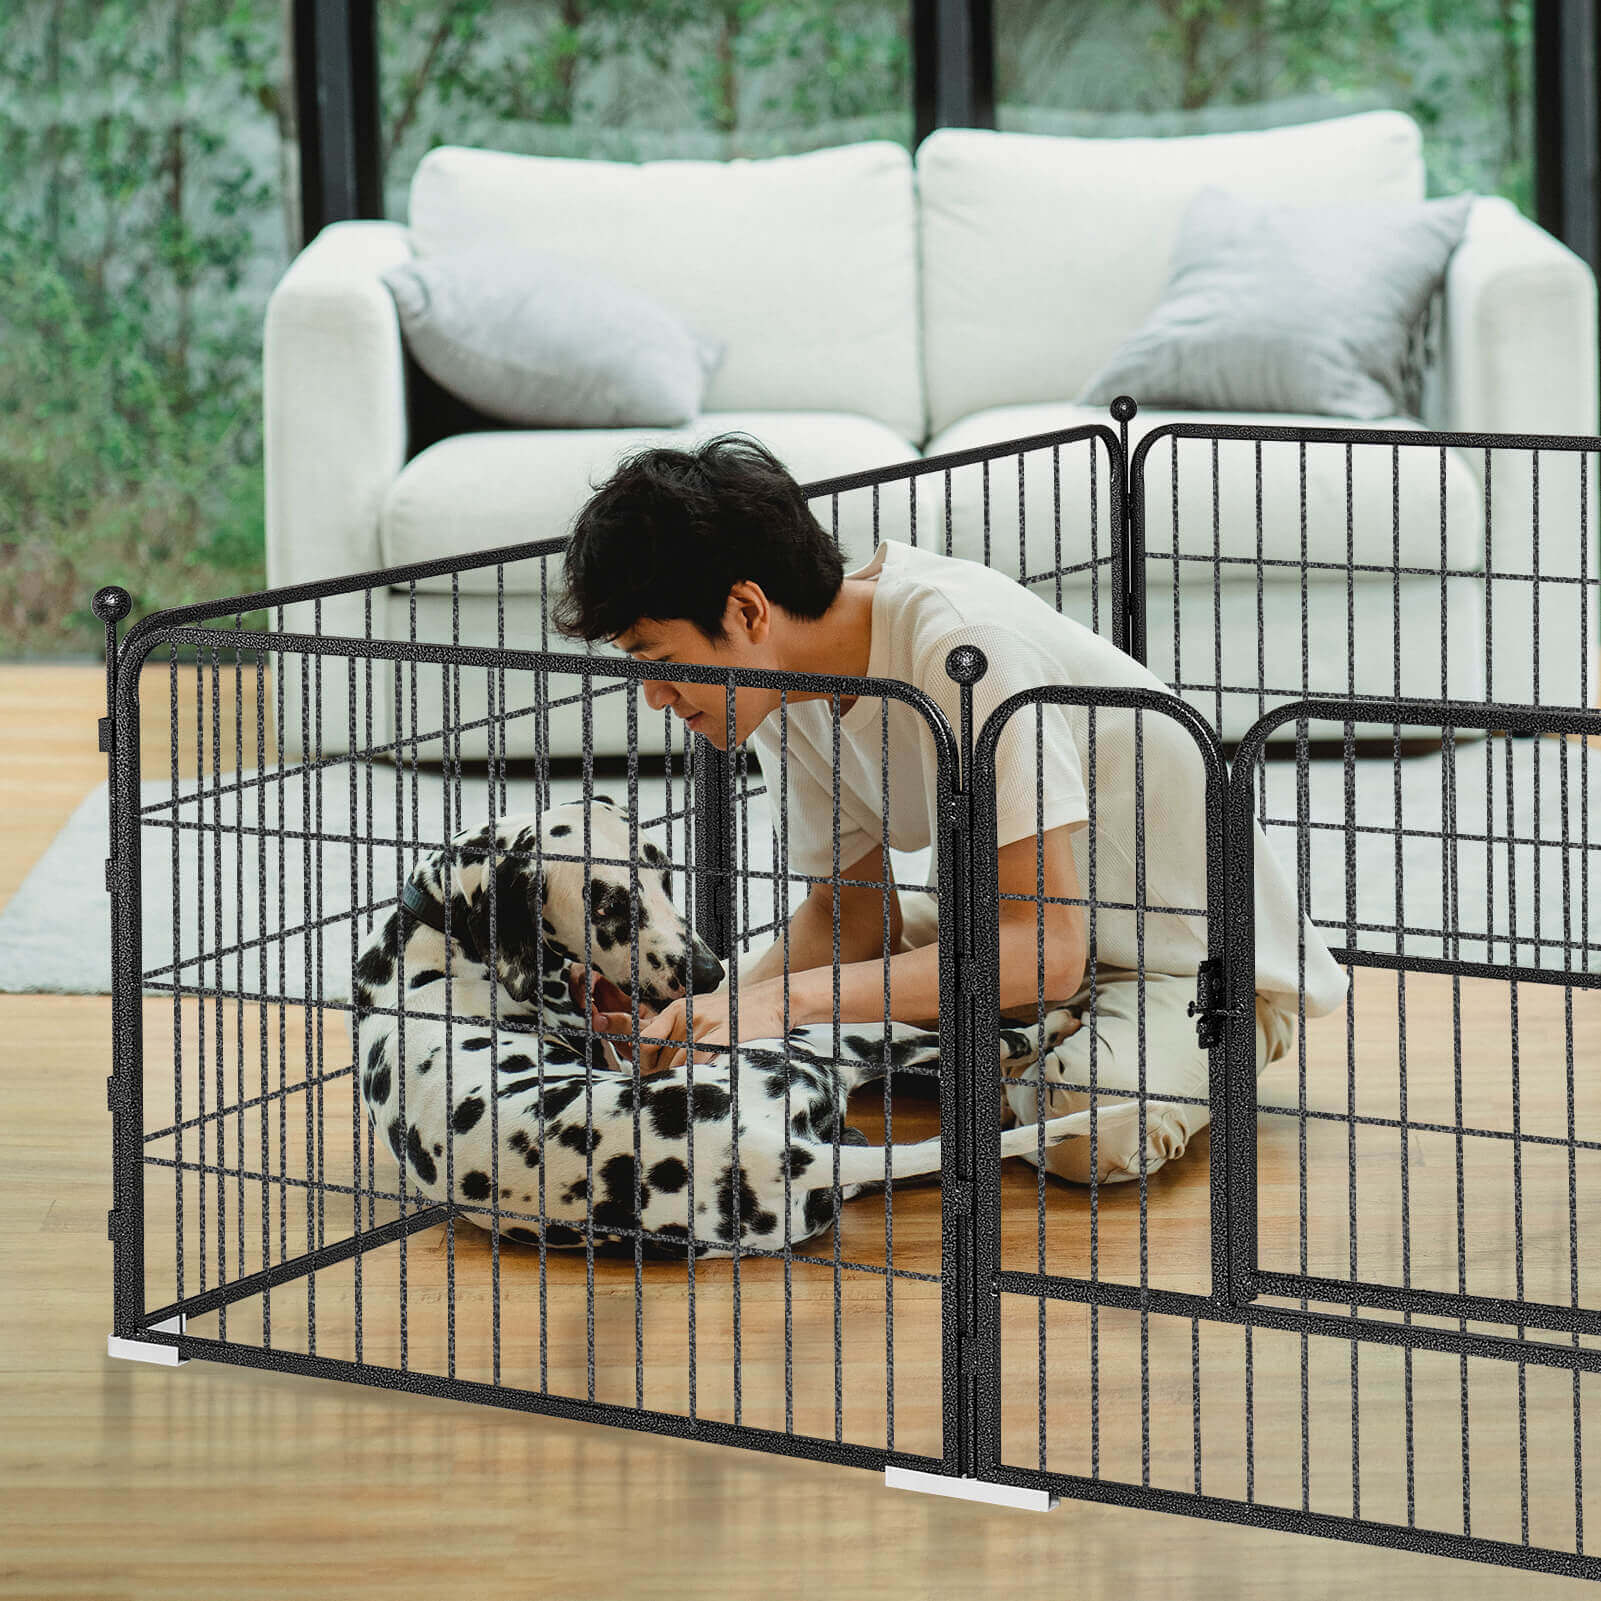 Elecwish High-Security Pet Fences indoor